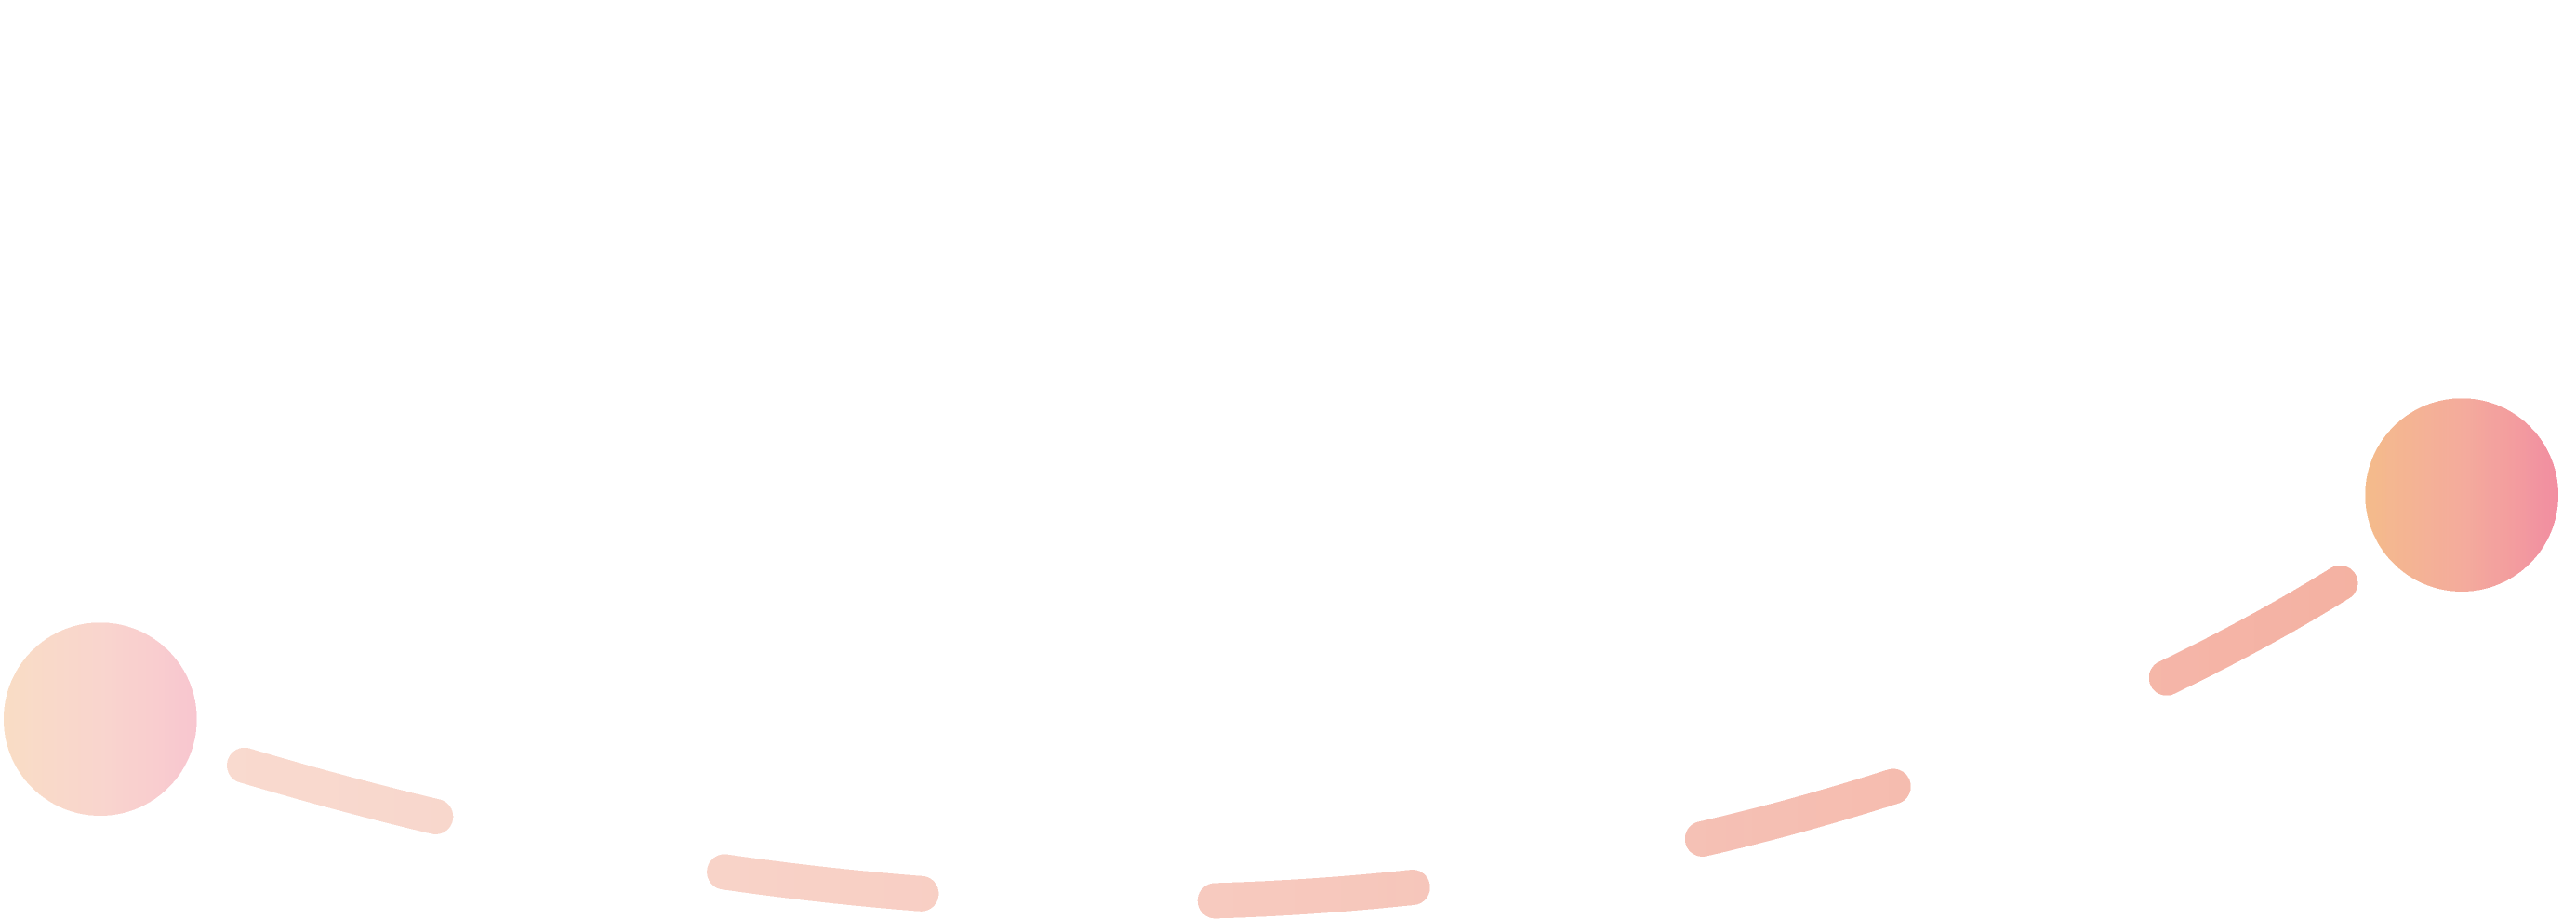 Linea arancione che rappresenta la terza fase del processo di candidatura.